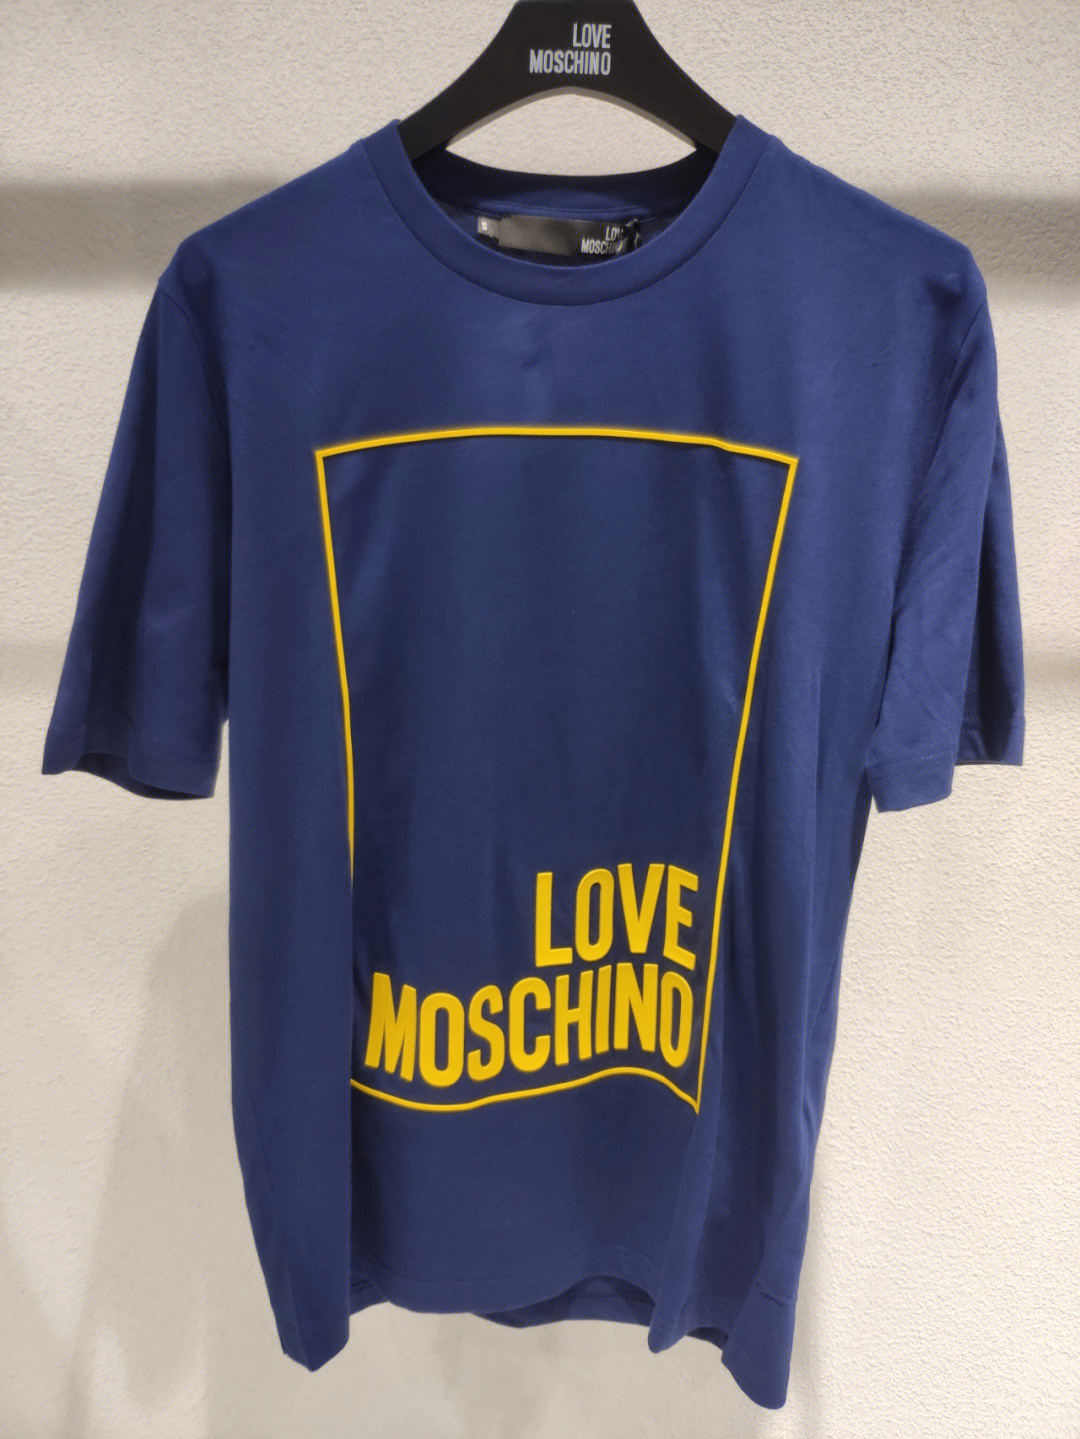 lovemoschino意大利品牌男式休闲t恤